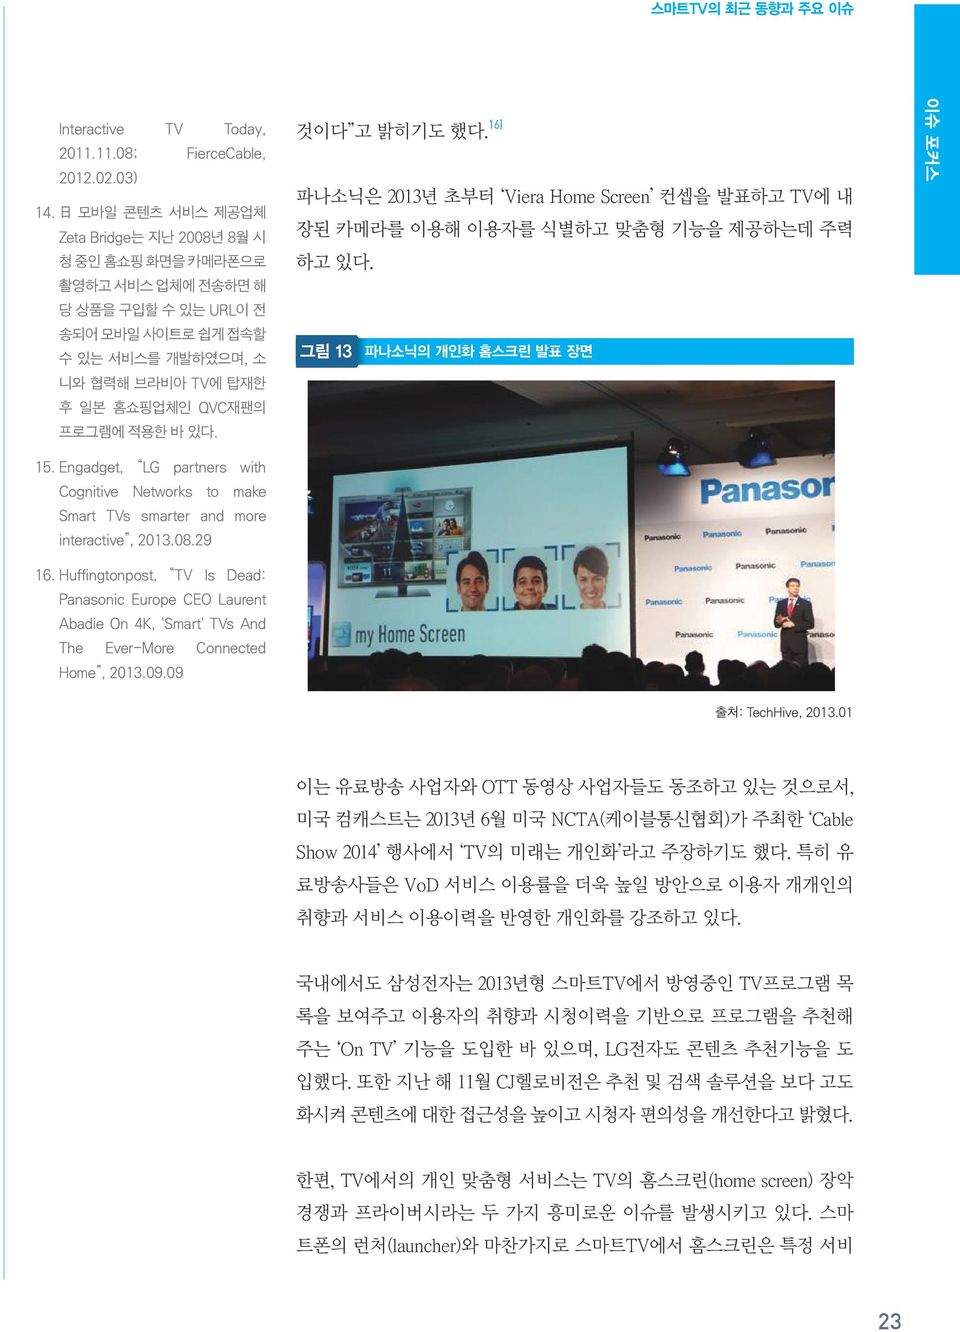 있다. 것이다 고 밝히기도 했다. 16) 파나소닉은 2013년 초부터 Viera Home Screen 컨셉을 발표하고 TV에 내 장된 카메라를 이용해 이용자를 식별하고 맞춤형 기능을 제공하는데 주력 하고 있다. 그림 13 파나소닉의 개인화 홈스크린 발표 장면 이슈 포커스 15.